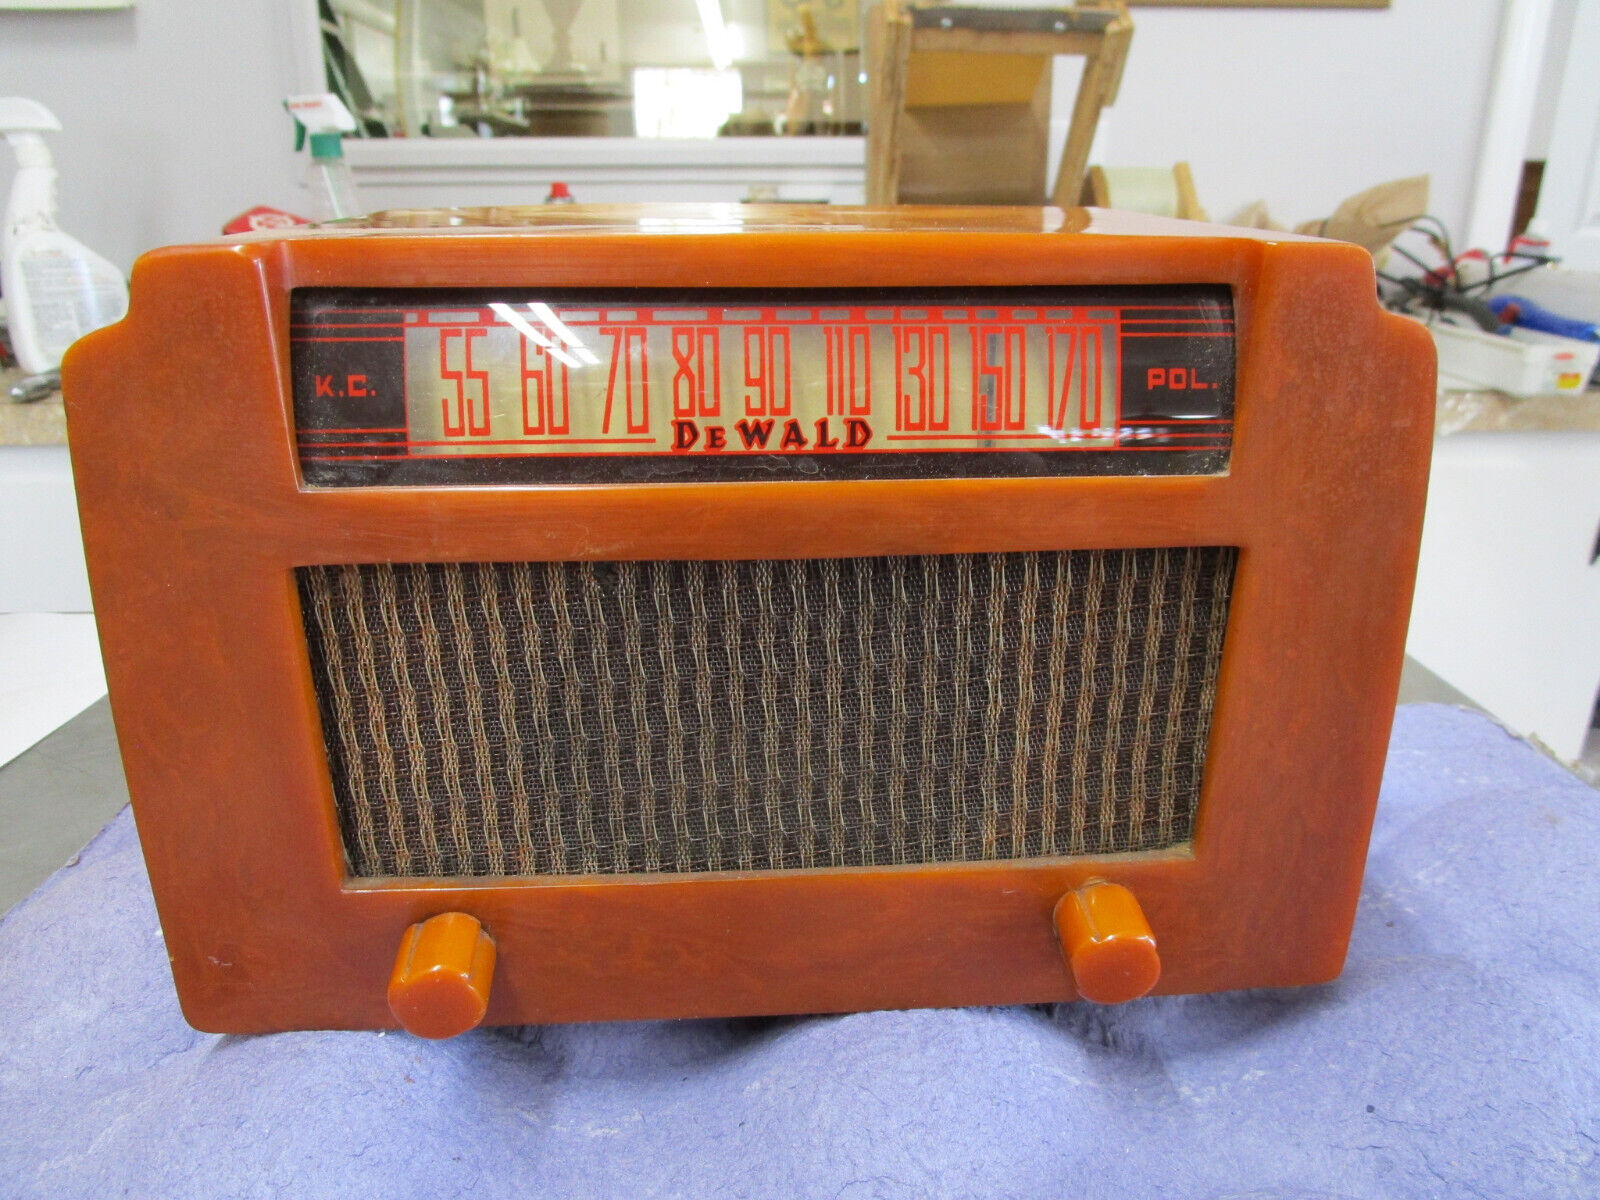 Rare DeWald Catalin Operadio K.C. P.O.L. Vintage Radio